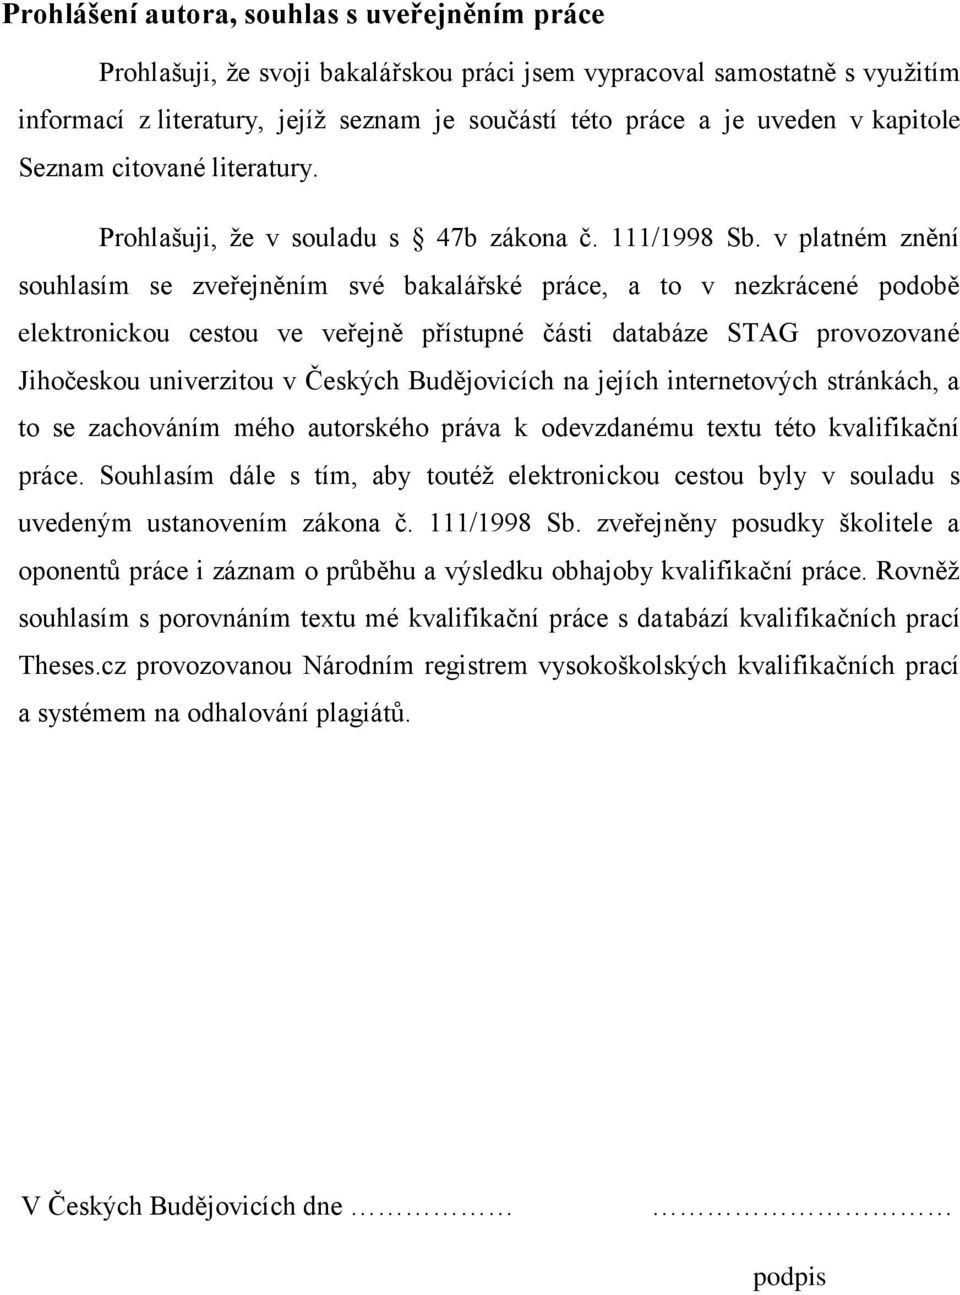 v platném znění souhlasím se zveřejněním své bakalářské práce, a to v nezkrácené podobě elektronickou cestou ve veřejně přístupné části databáze STAG provozované Jihočeskou univerzitou v Českých